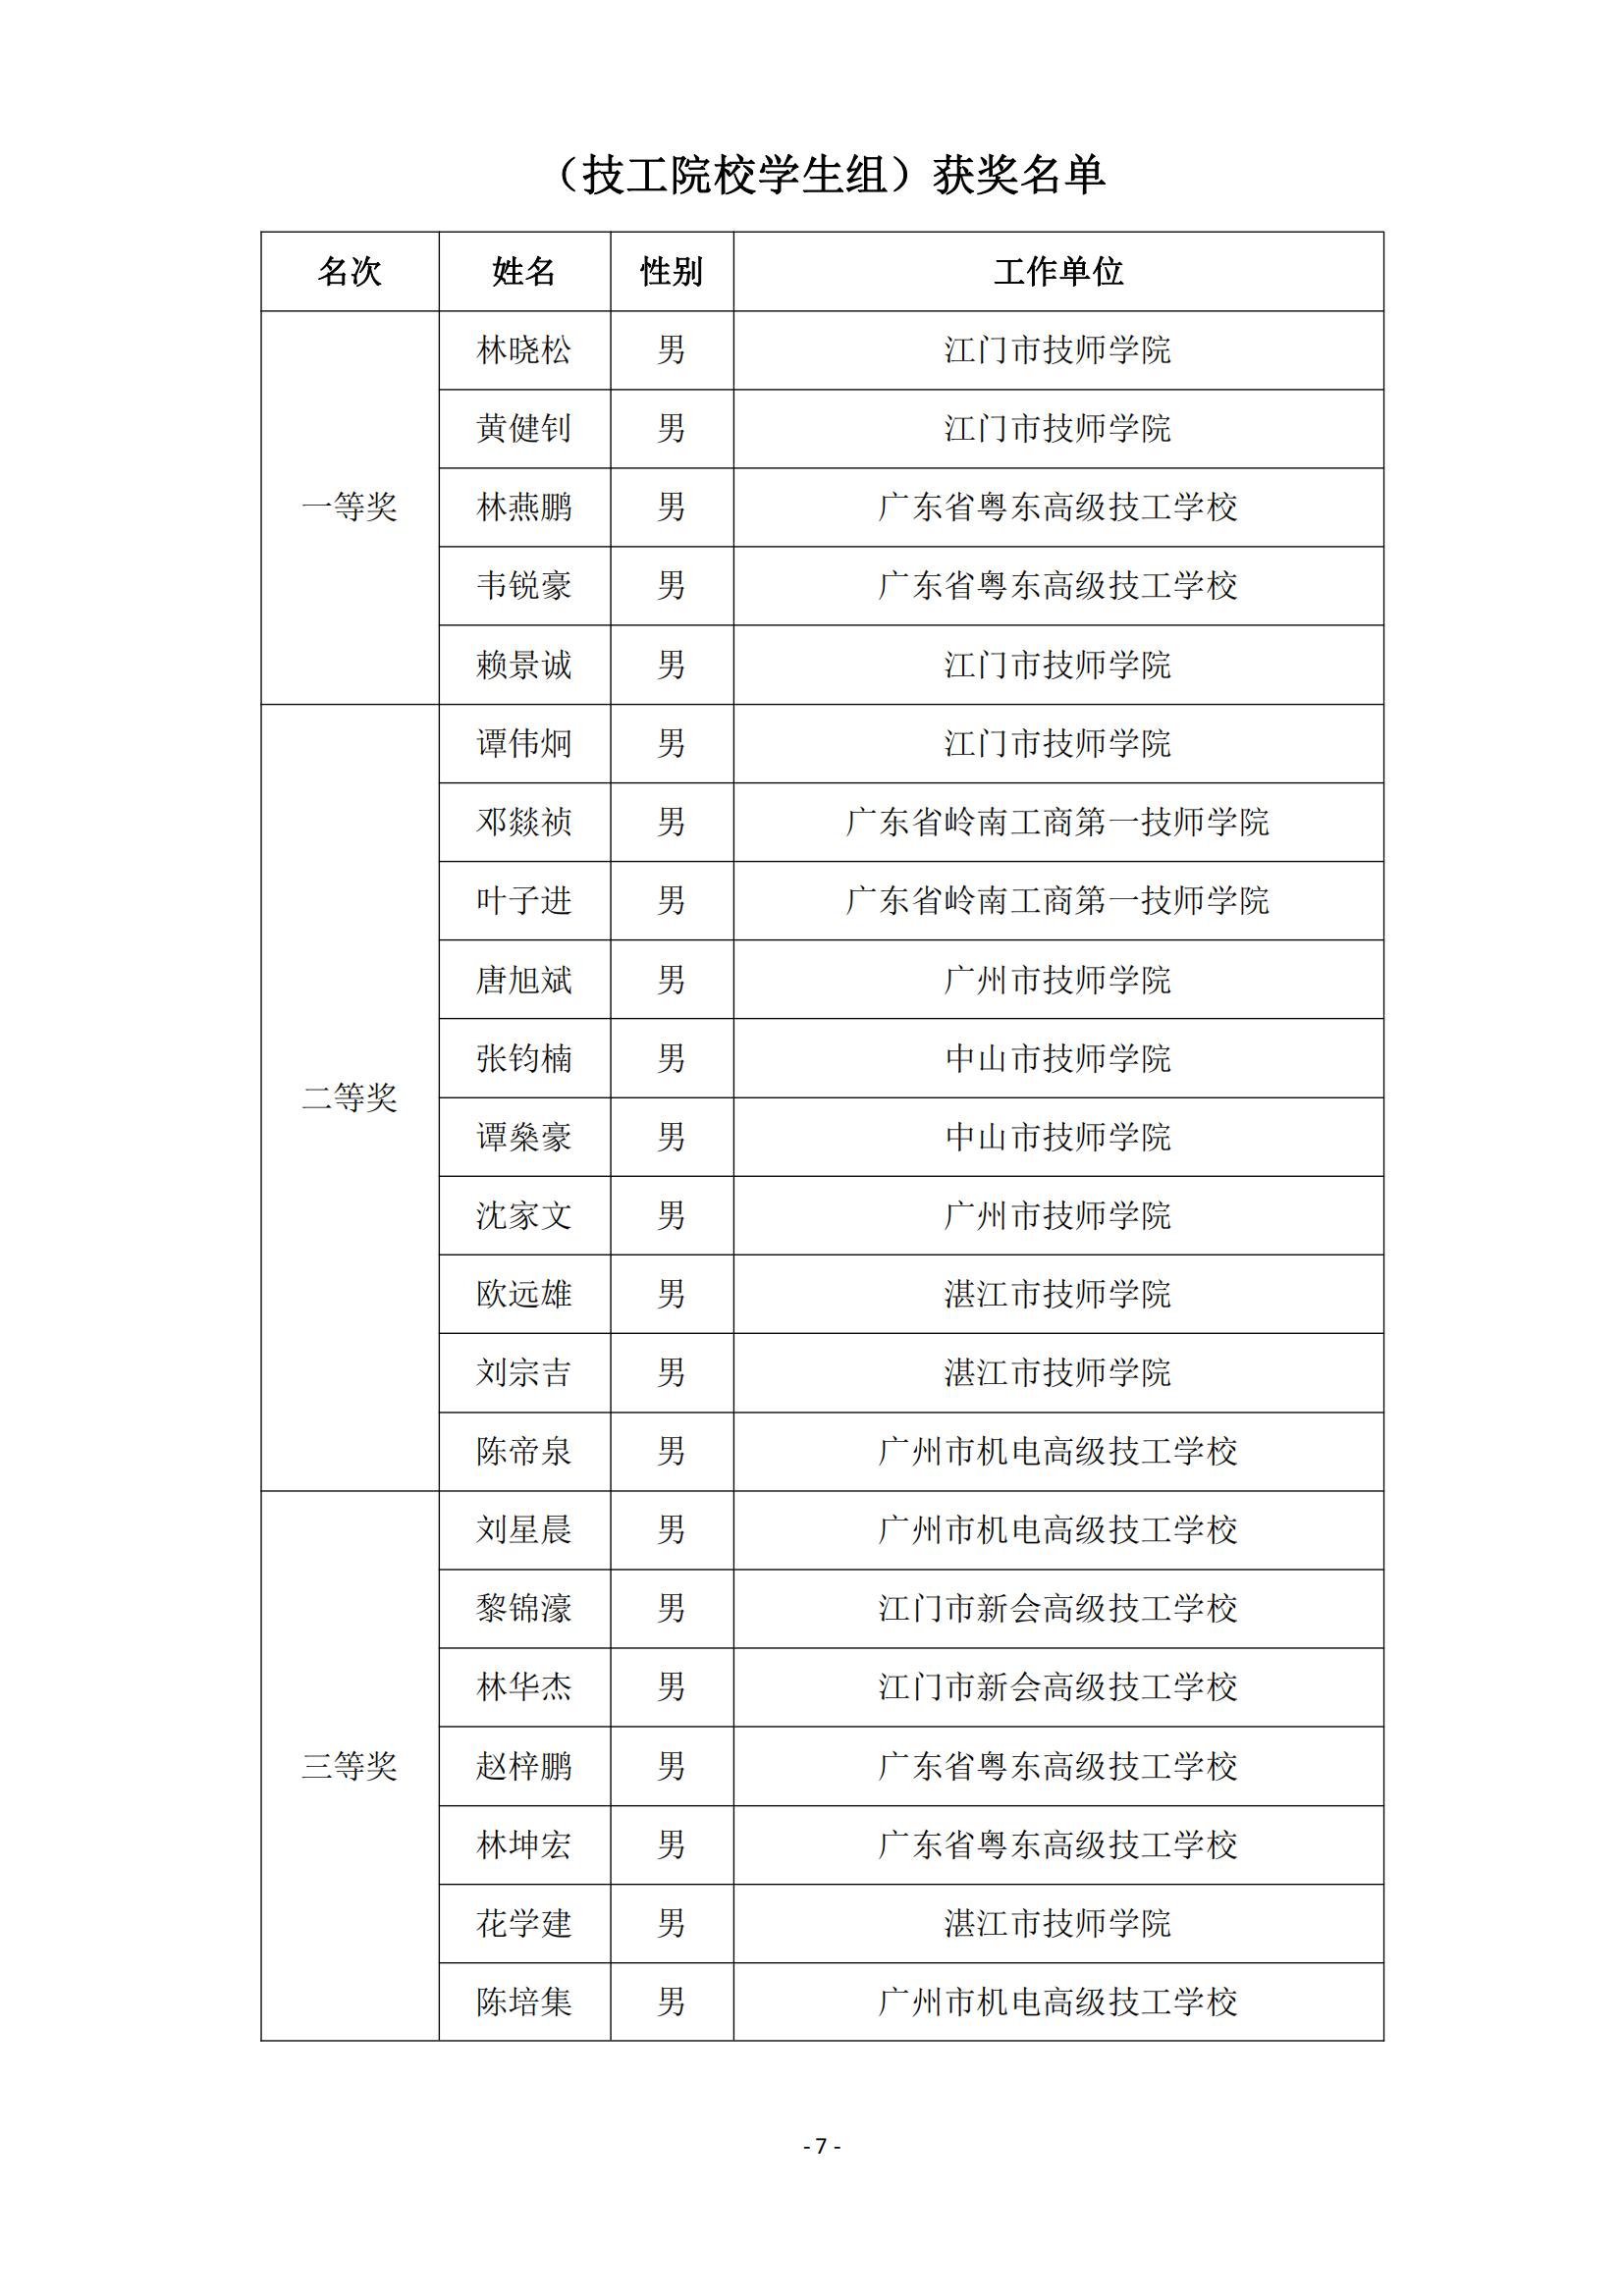 2015 年中国技能大赛--广东省机电一体化职业技能竞赛_06.jpg